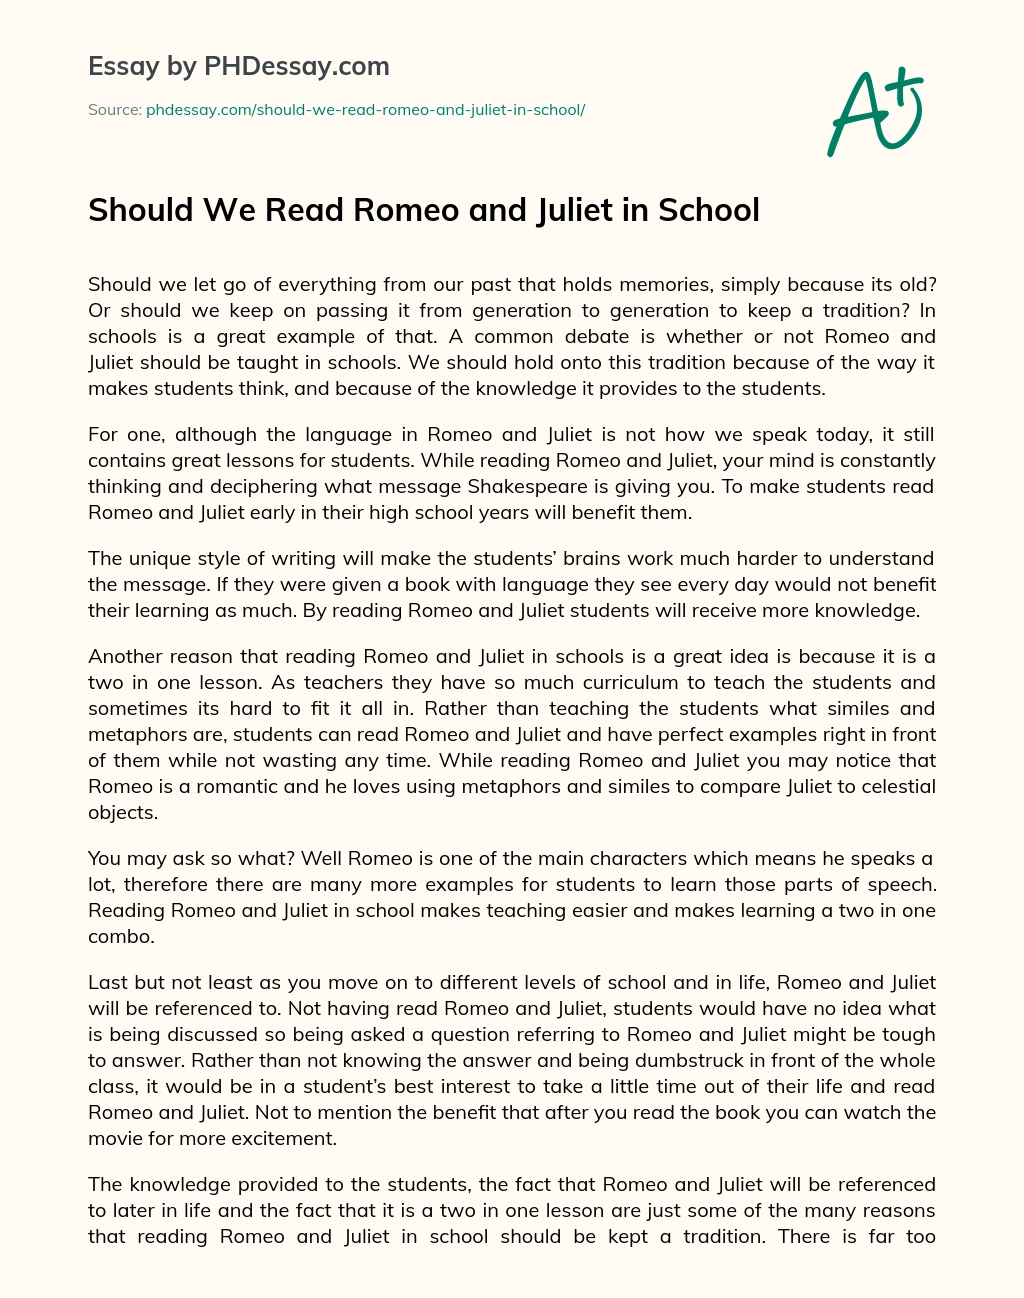 Should We Read Romeo and Juliet in School essay